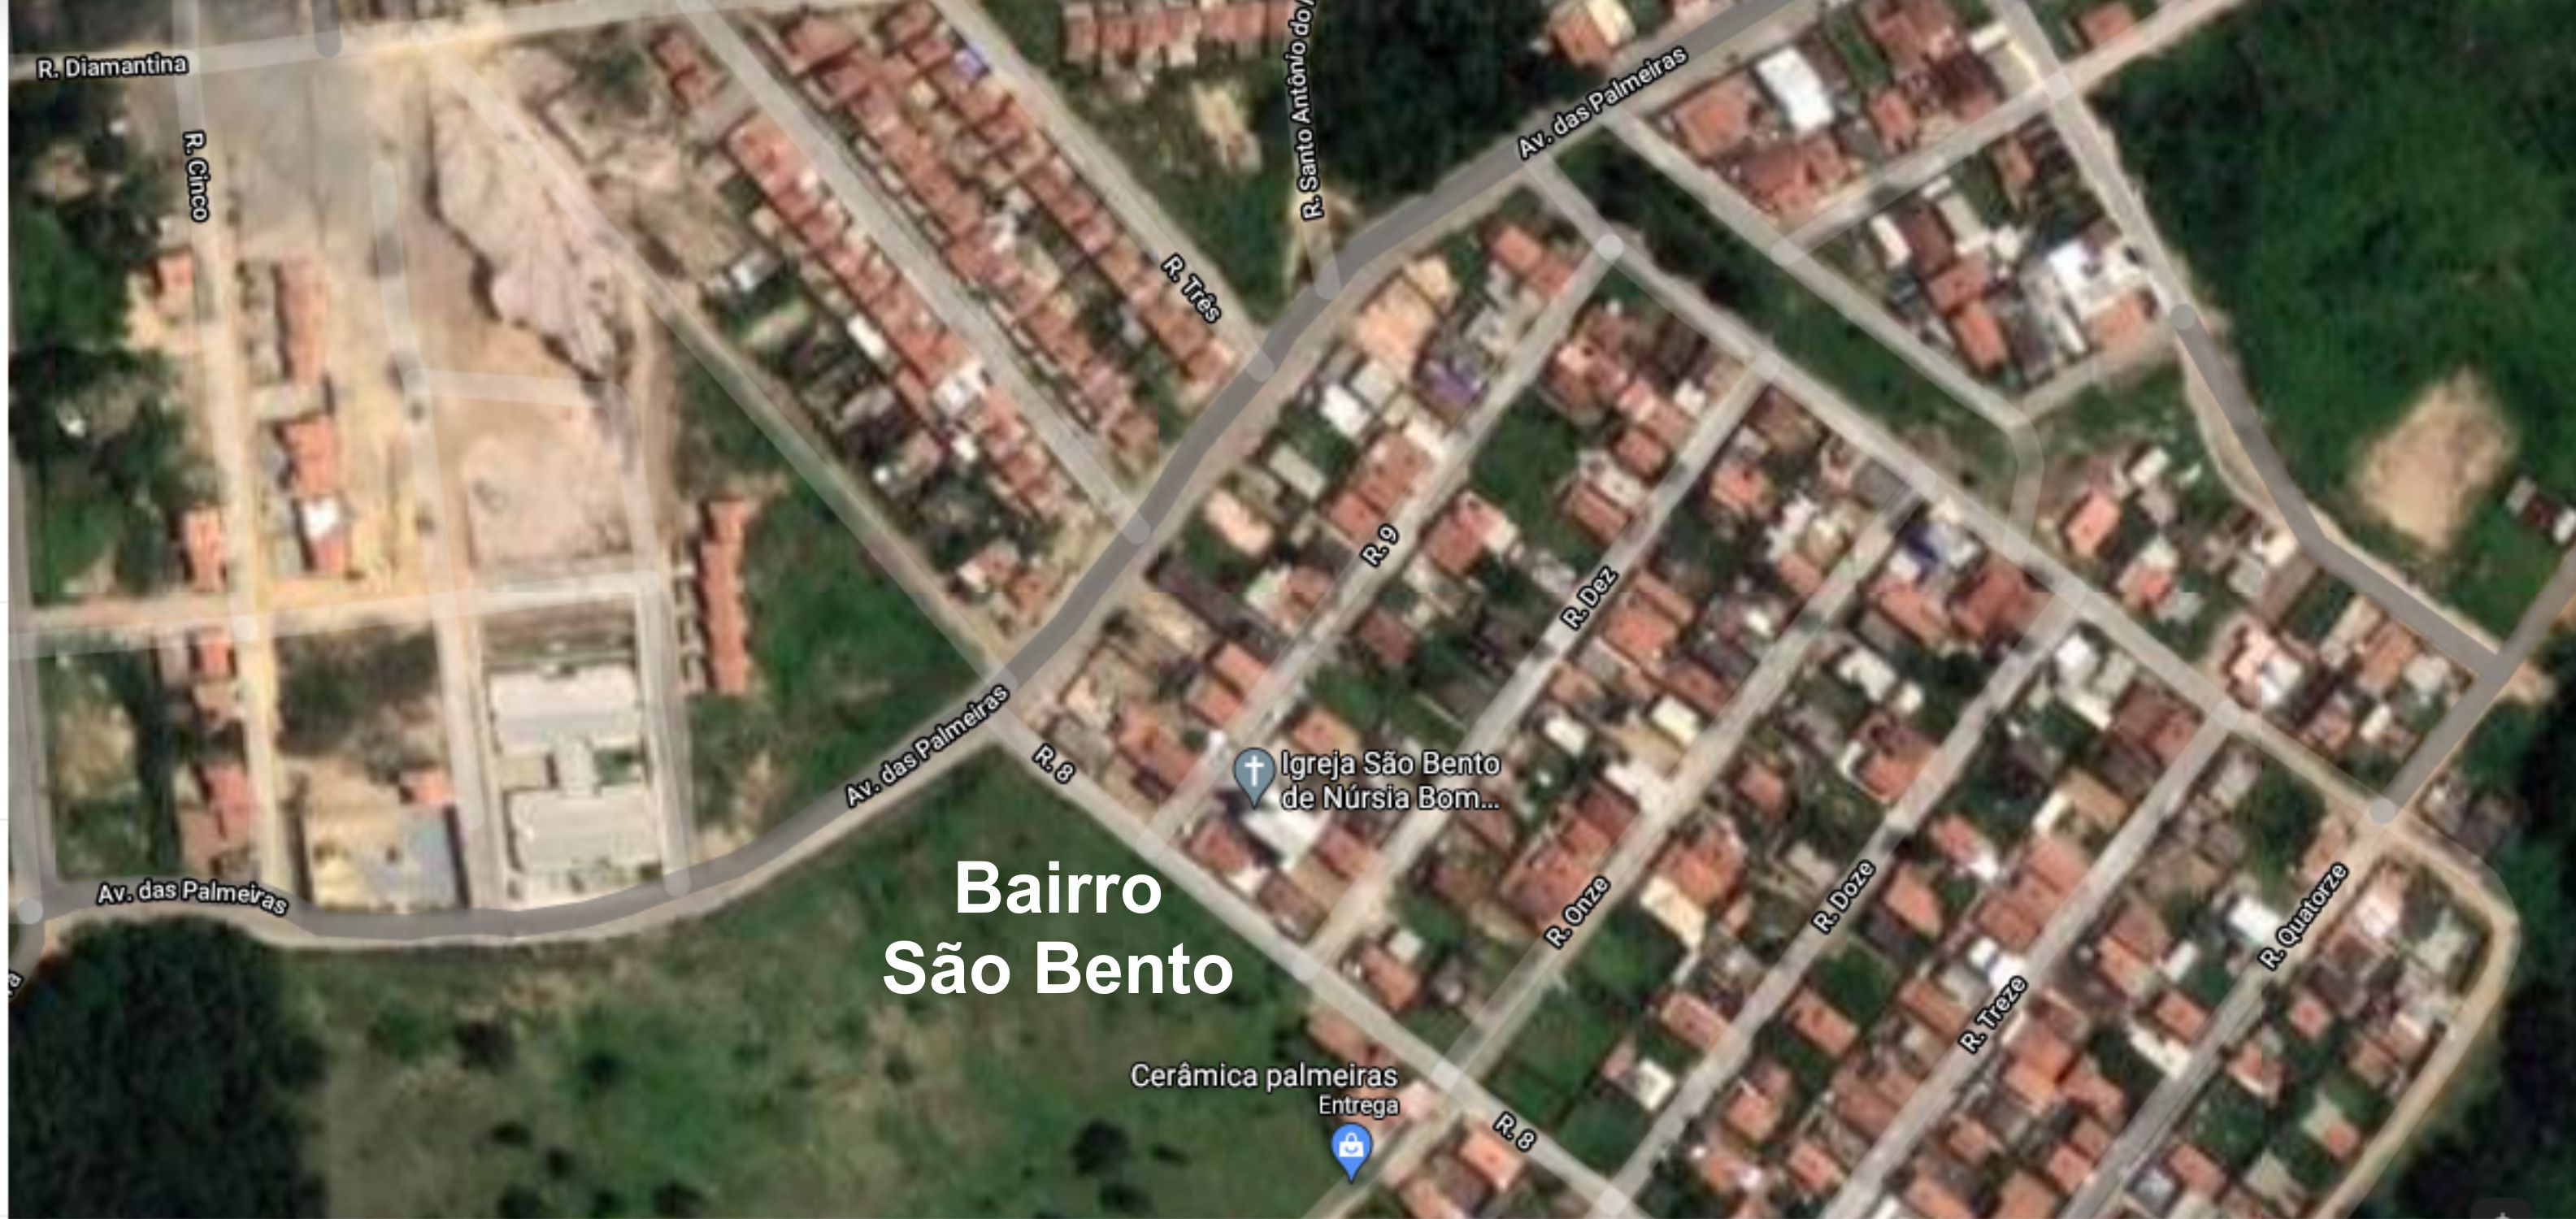 Atendendo a comunidade é nomeado o bairro São Bento.